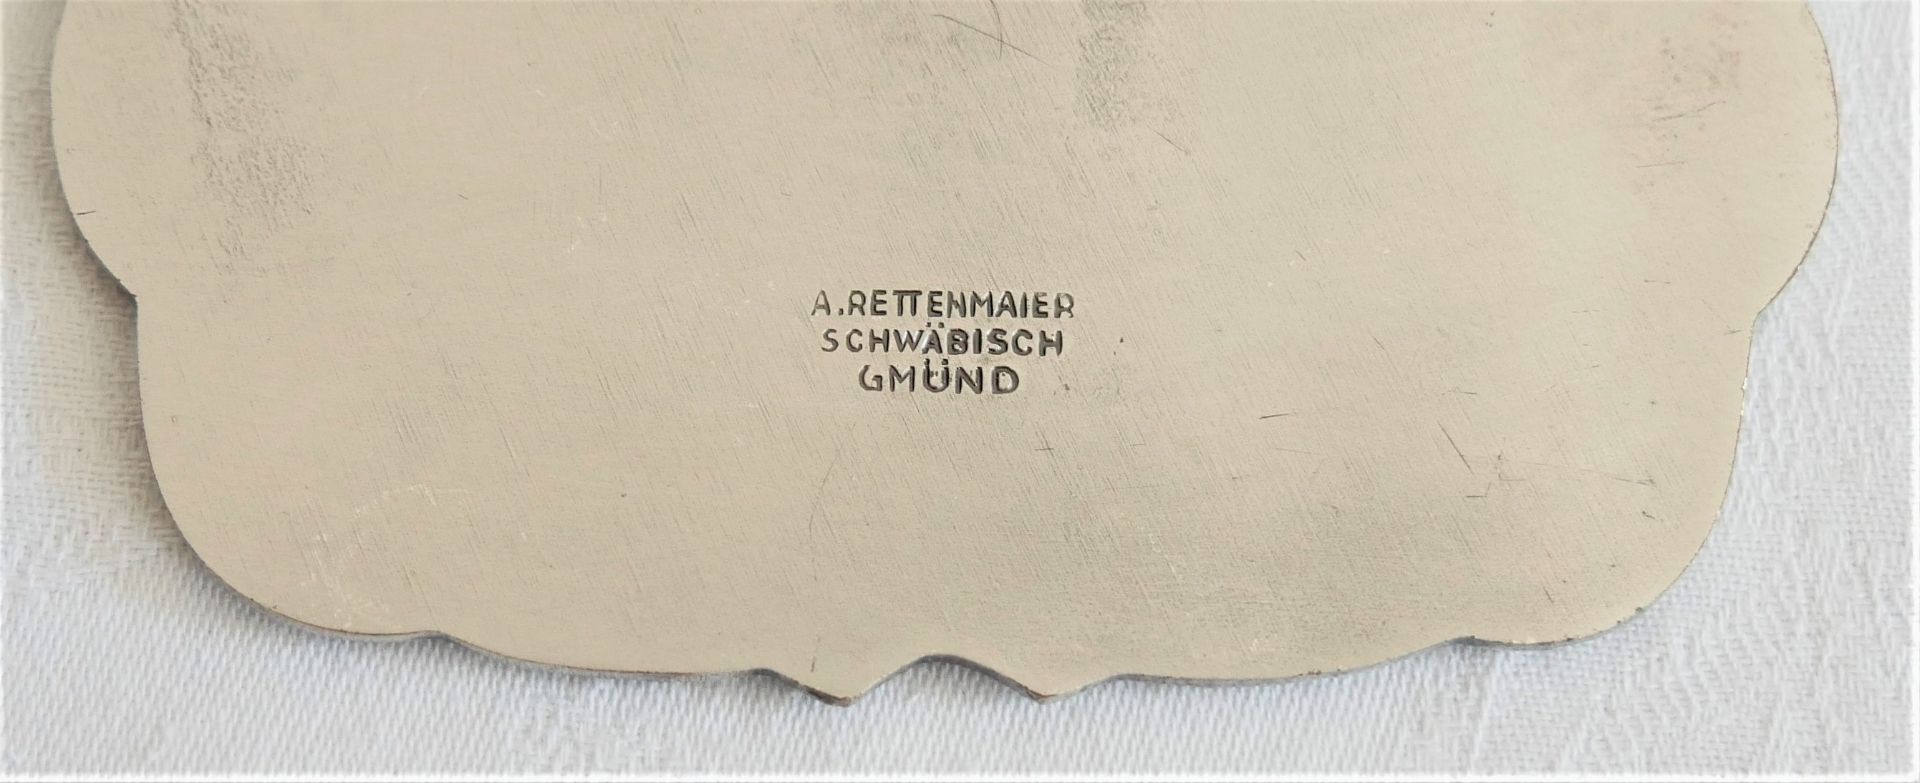 Drei ADAC - Heimatwettbewerb - Plakette: 1983 Marktplätze in Württemberg, 1985 Schlösser in - Image 3 of 3